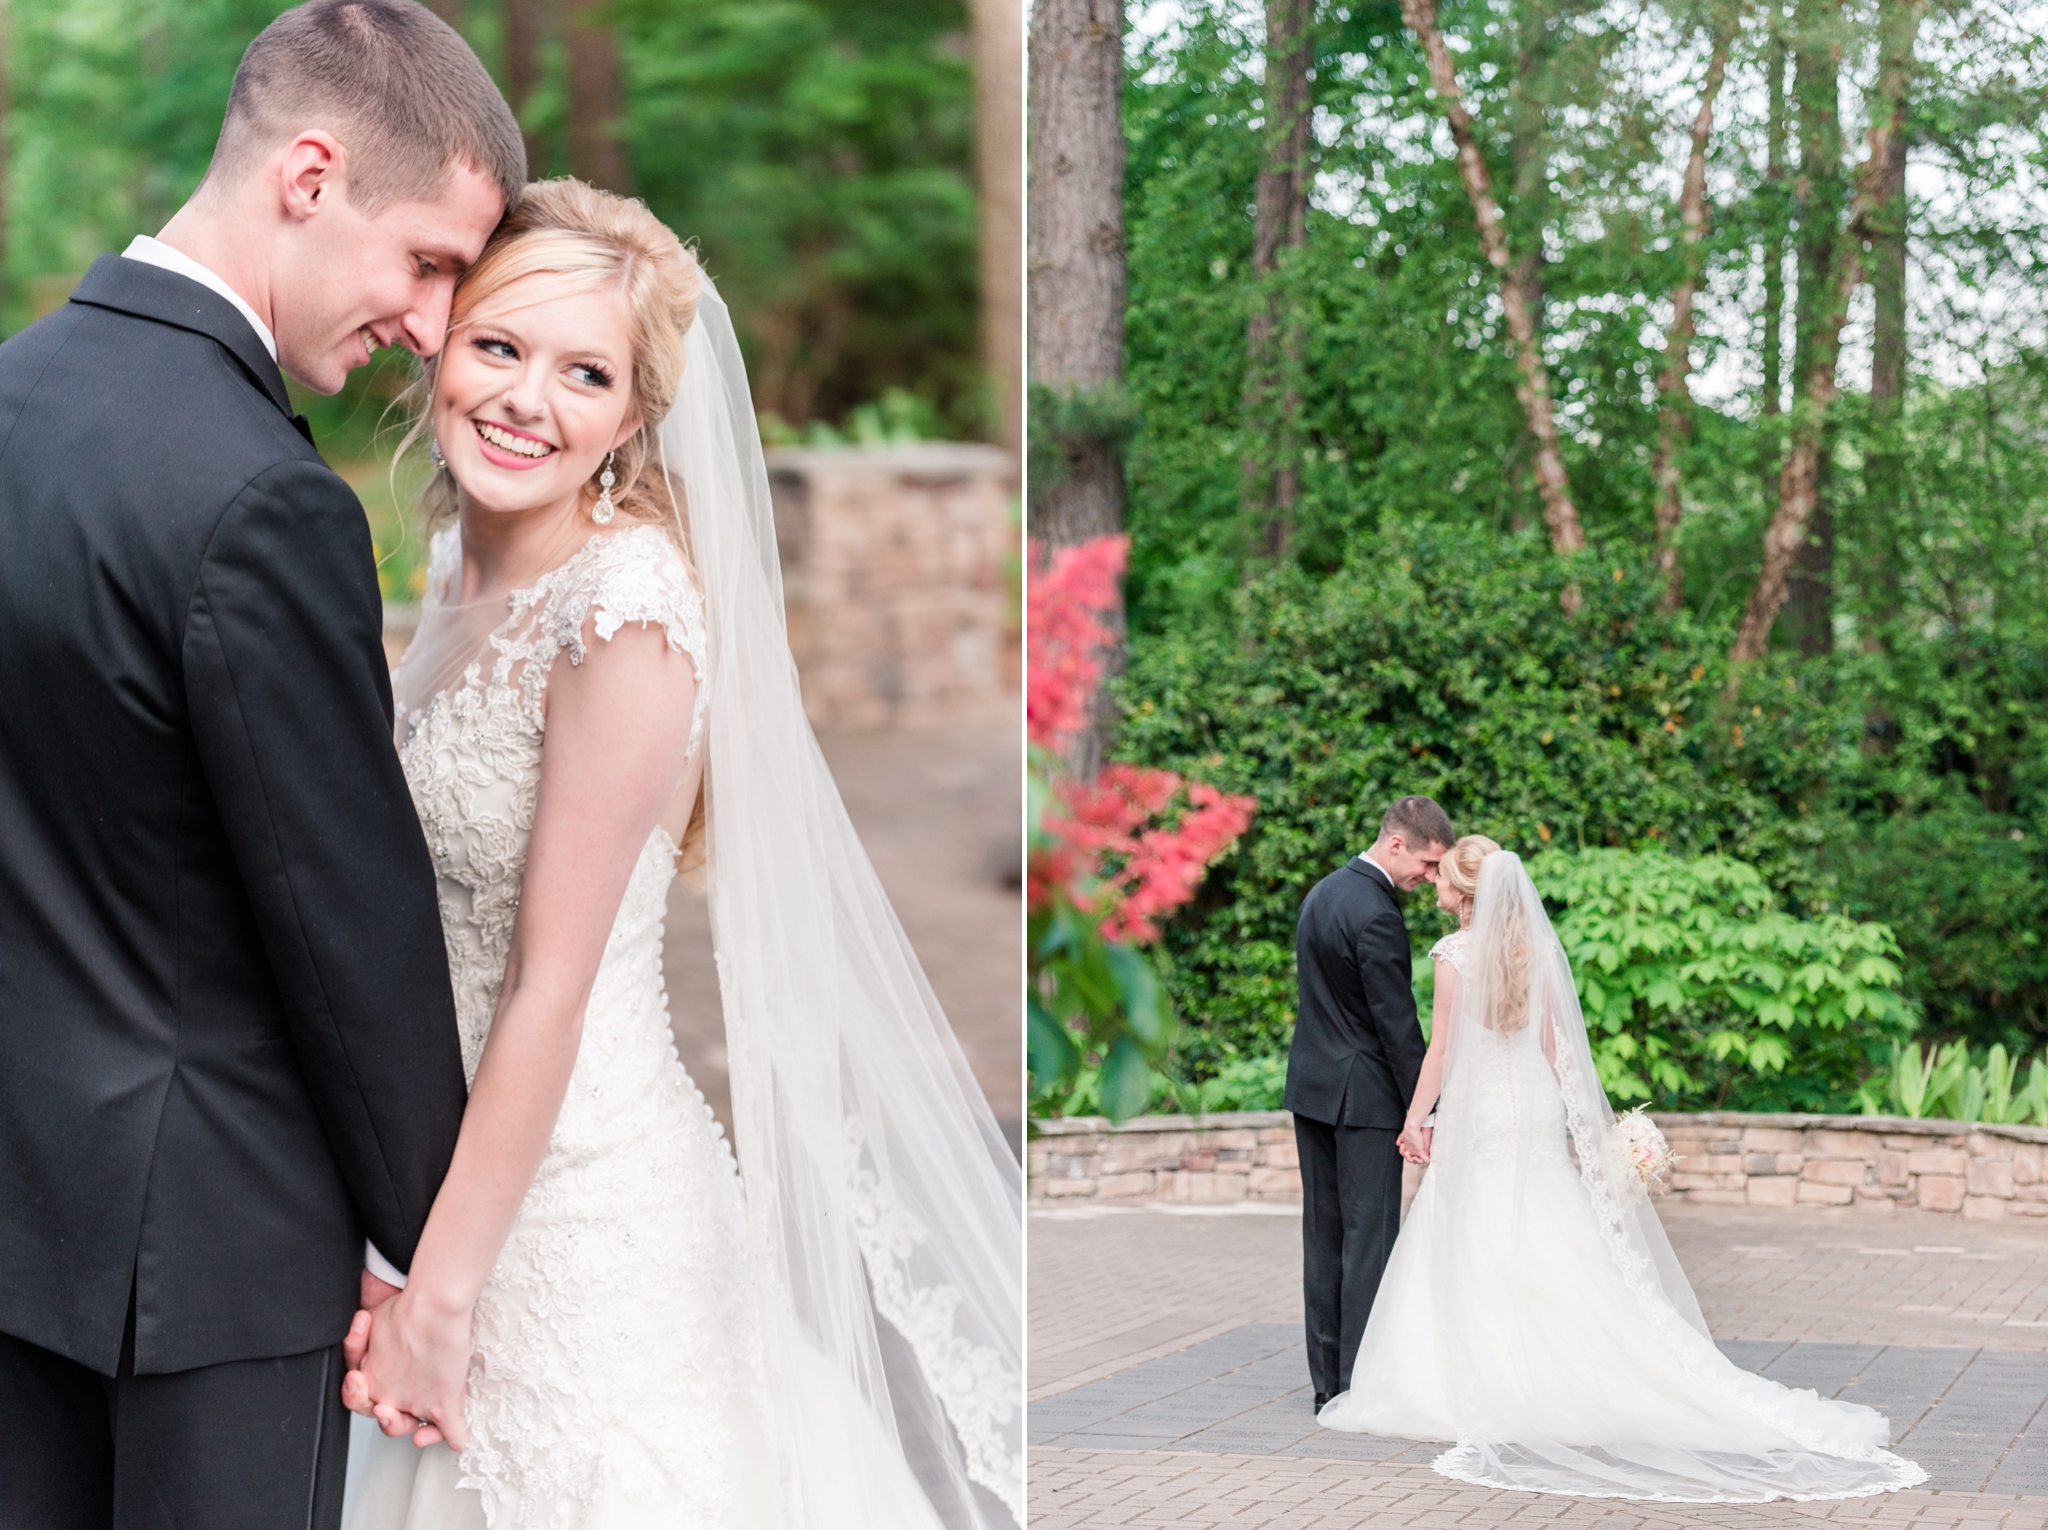 Aldridge Garden Hoover Alabama Blush Spring Wedding | Birmingham Alabama Wedding Photographers_0045.jpg